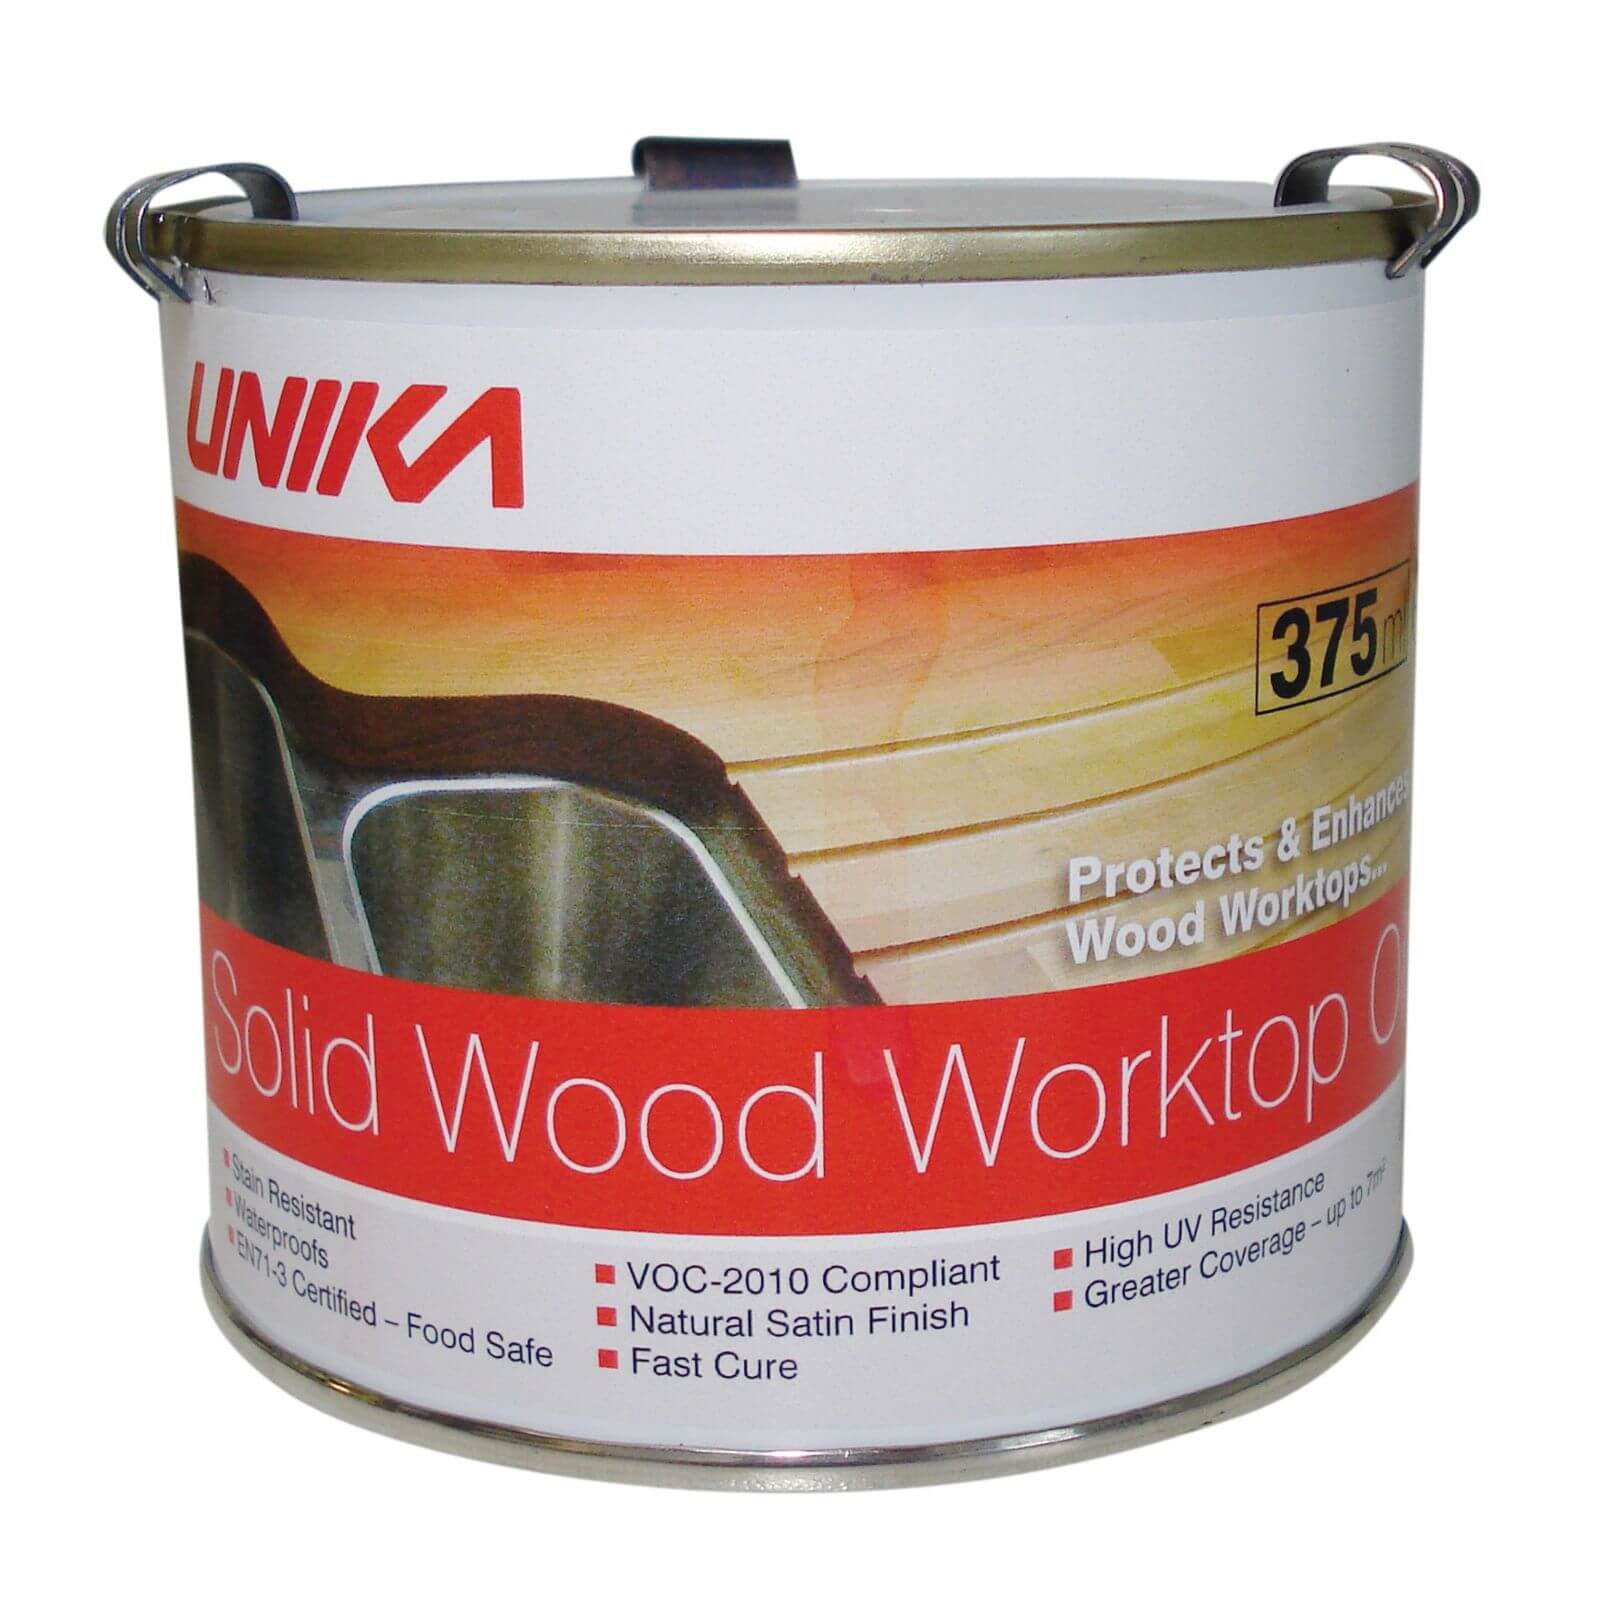 Unika Solid Wood Worktop Oil - 375ml